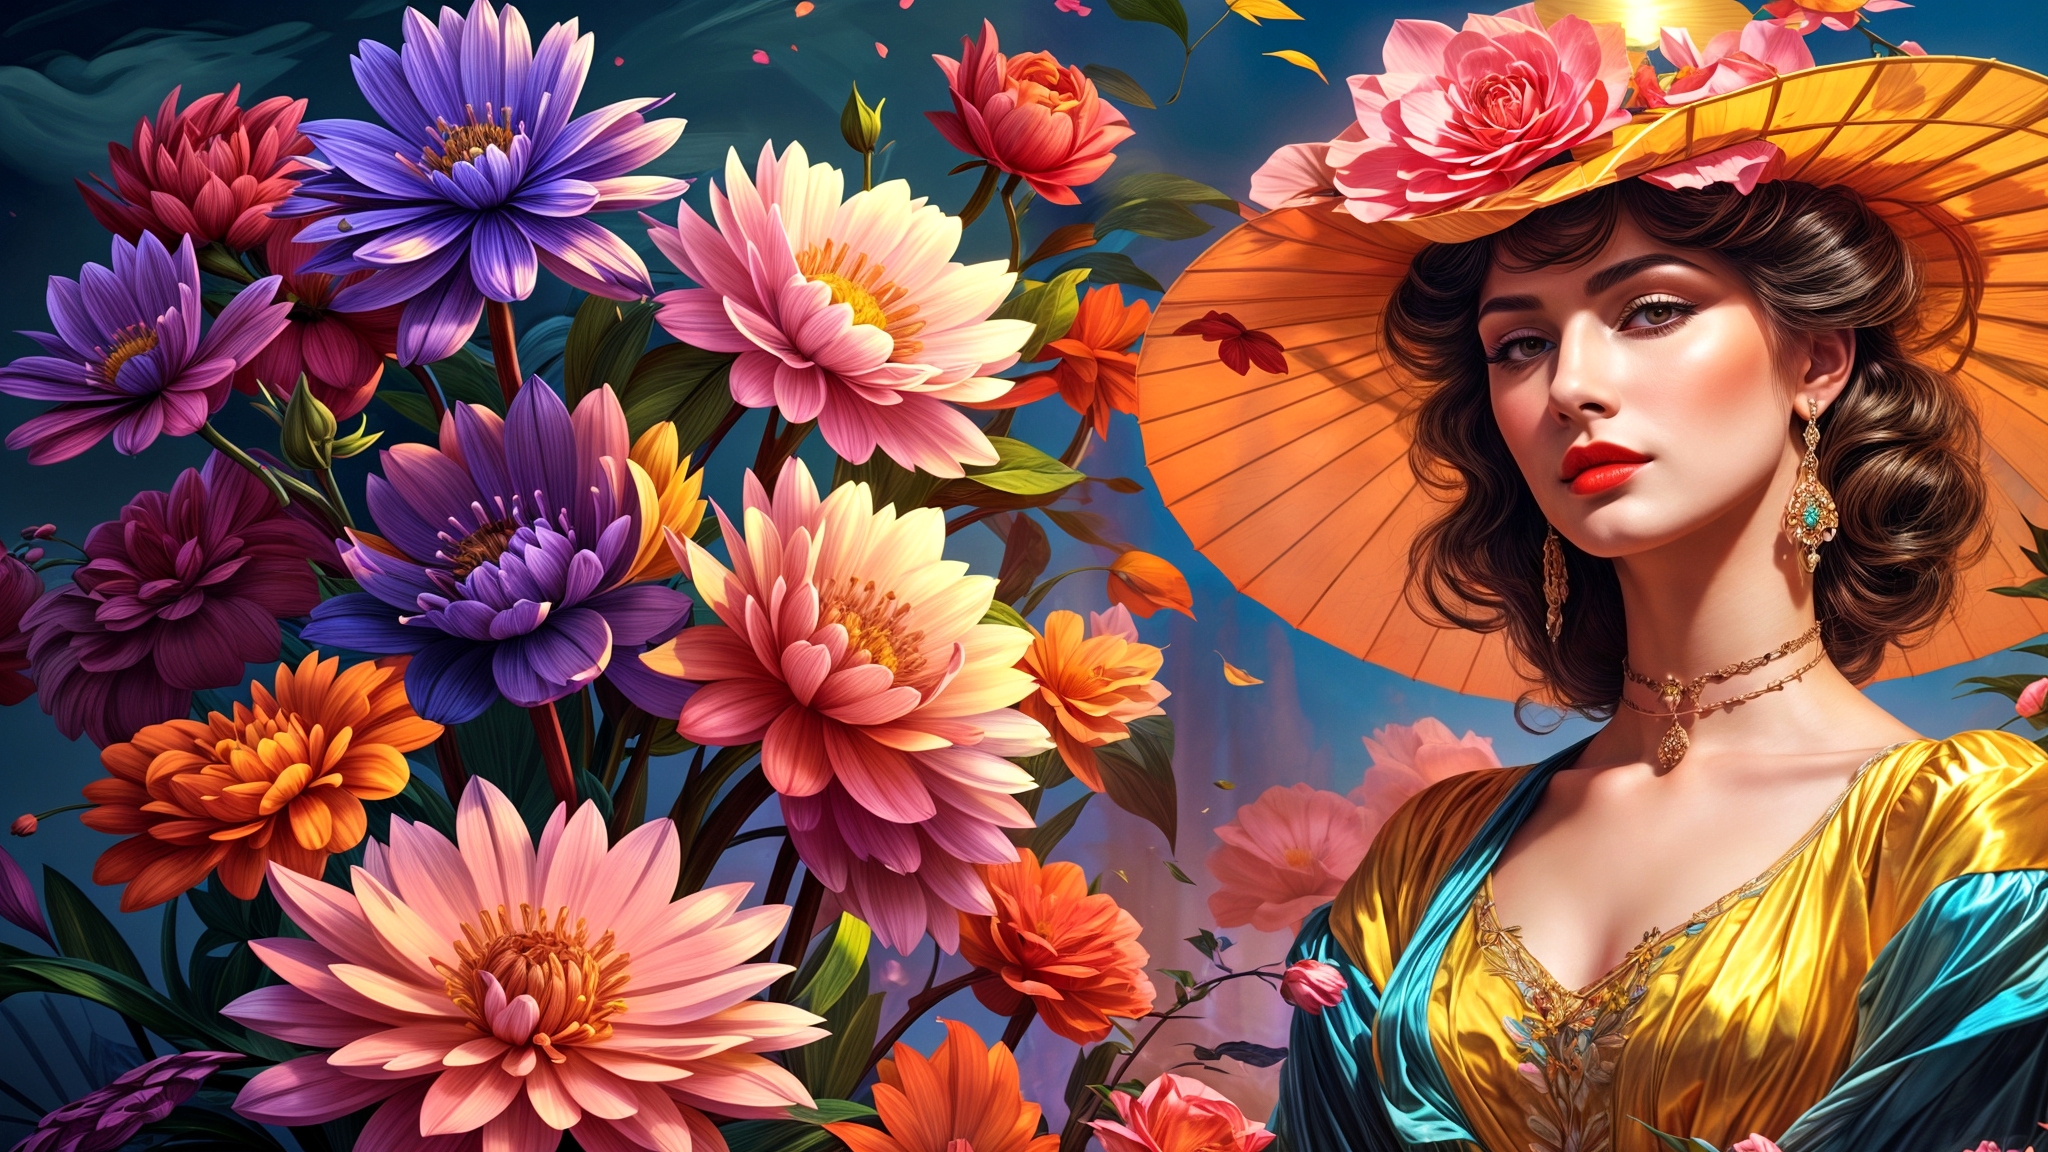 Бесплатное фото Портрет девушки в шляпе и цветы